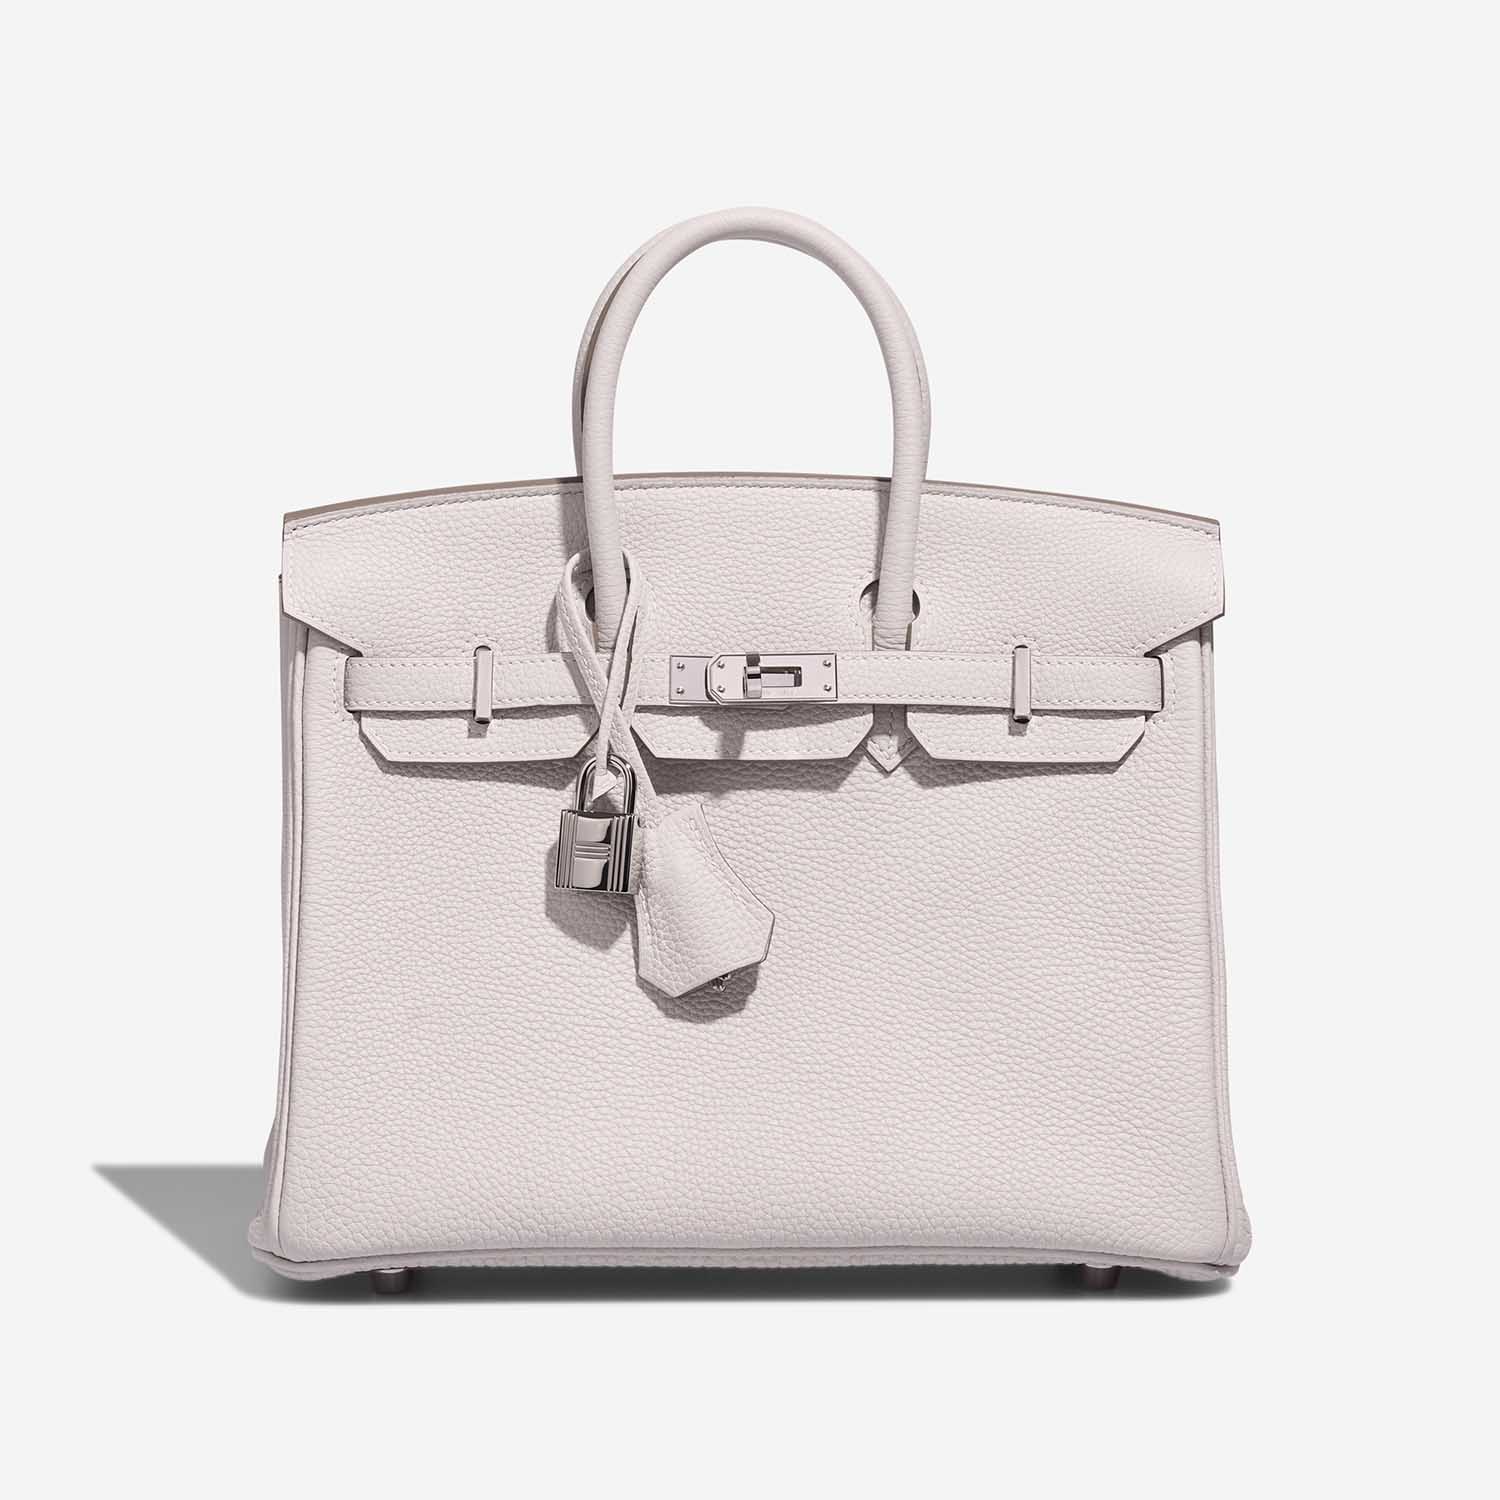 Hermès Birkin 25 GrisPale Front S | Verkaufen Sie Ihre Designer-Tasche auf Saclab.com